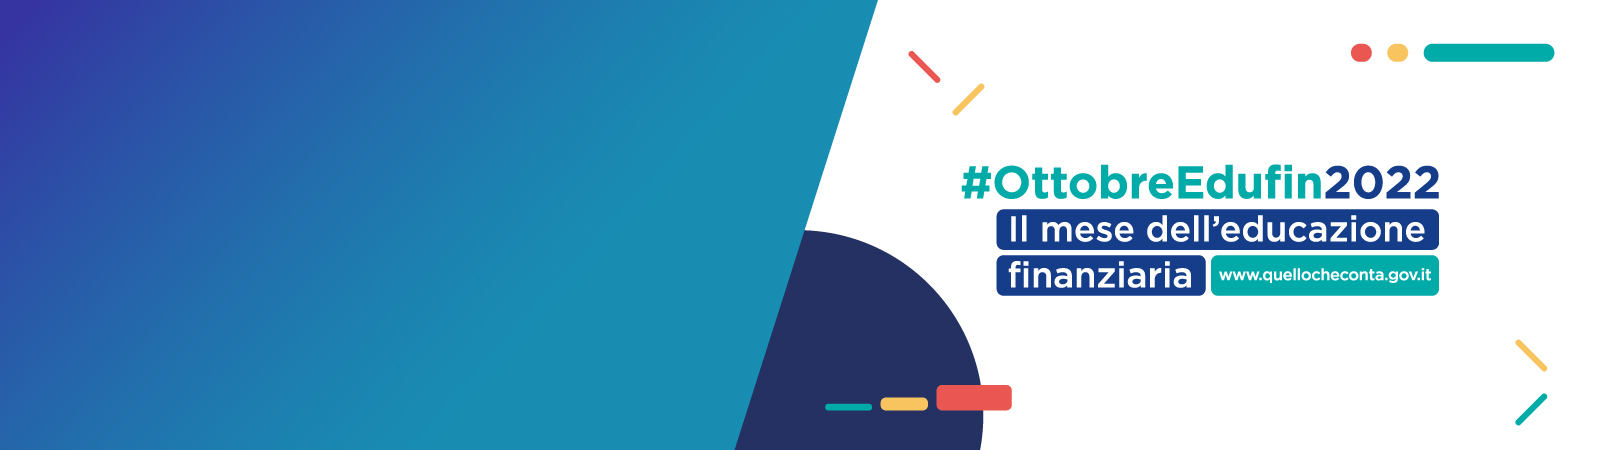 #OttobreEdufin2022: evento di apertura il 1° ottobre. Segui la diretta in streaming!